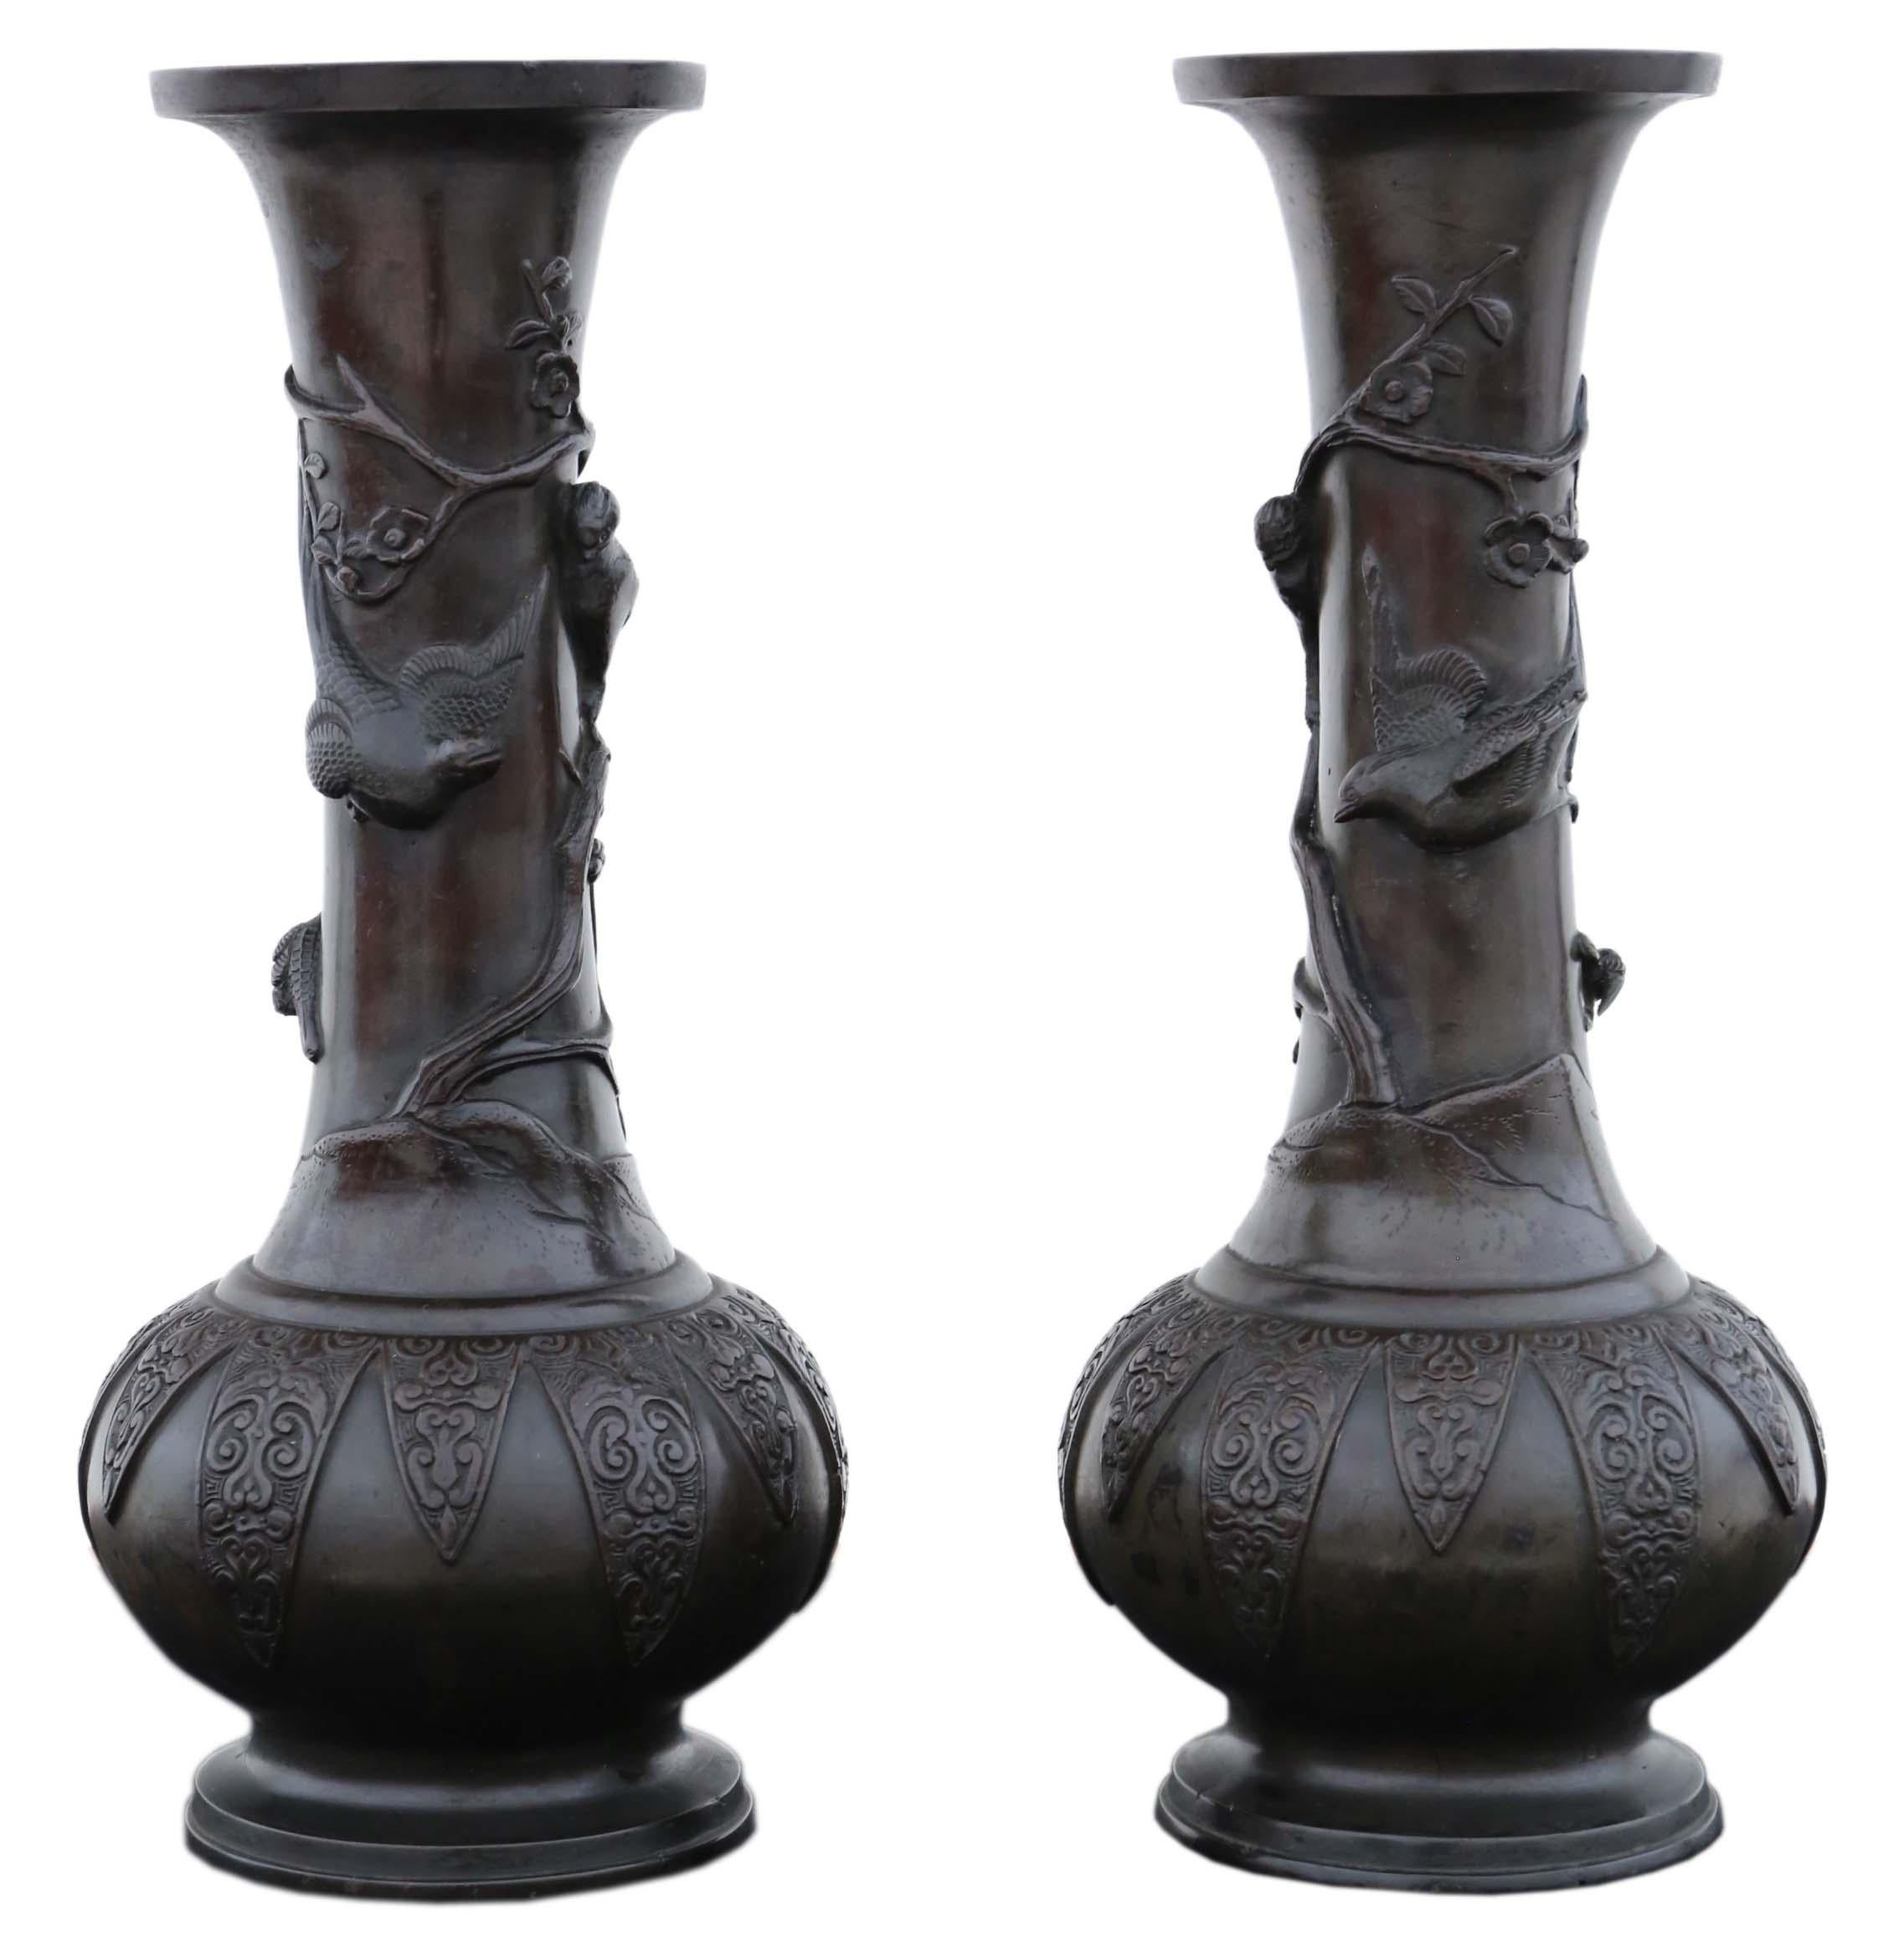 Ancienne très grande paire de vases japonais en bronze - Pièces d'artiste exquises de la période Meiji !

Cette remarquable paire de vases japonais en bronze, datant de la période Meiji du XIXe siècle, témoigne du summum de l'artisanat d'art. Chaque